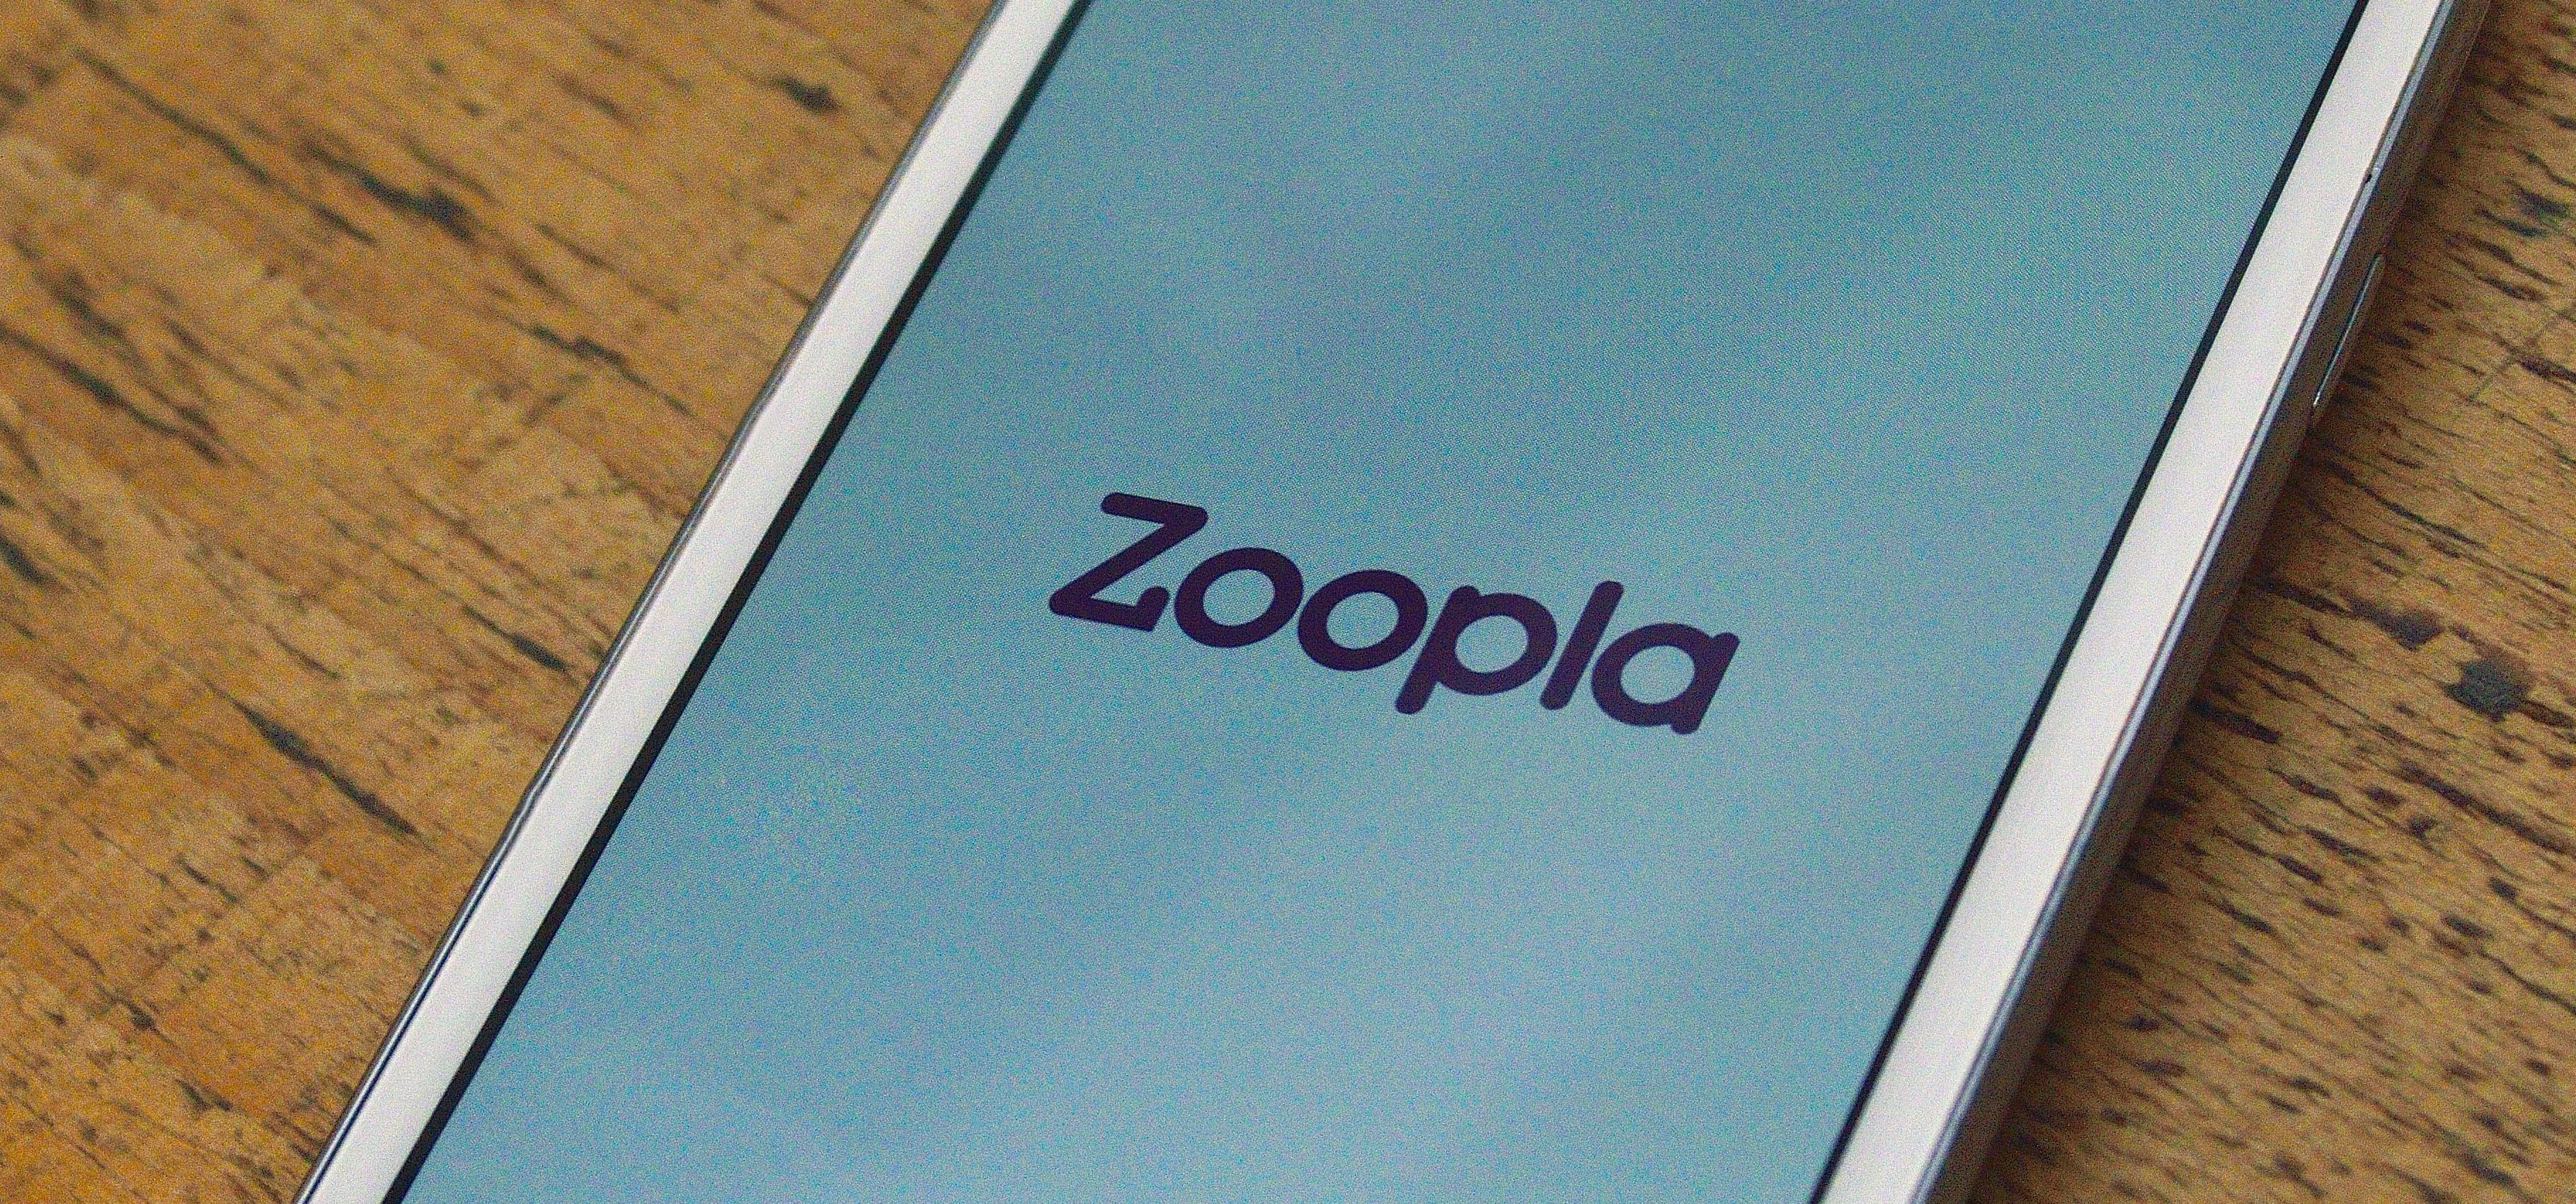 Zoopla App on a Samsung Galaxy